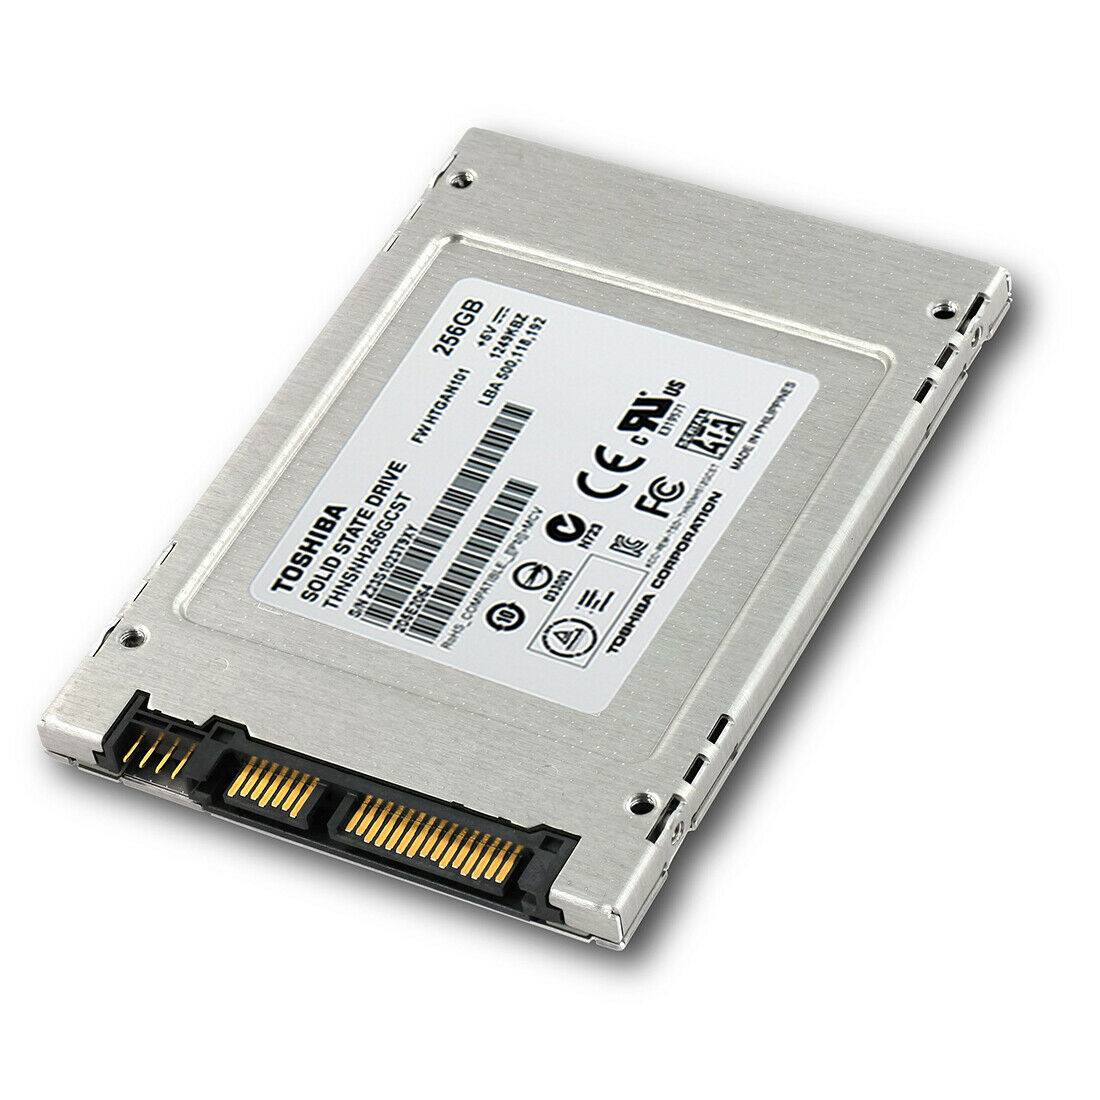 TOSHIBA (SATA) 2.5" SSD 256GB HG5d Series 6Gb/s SSD, THNSNH256GCST